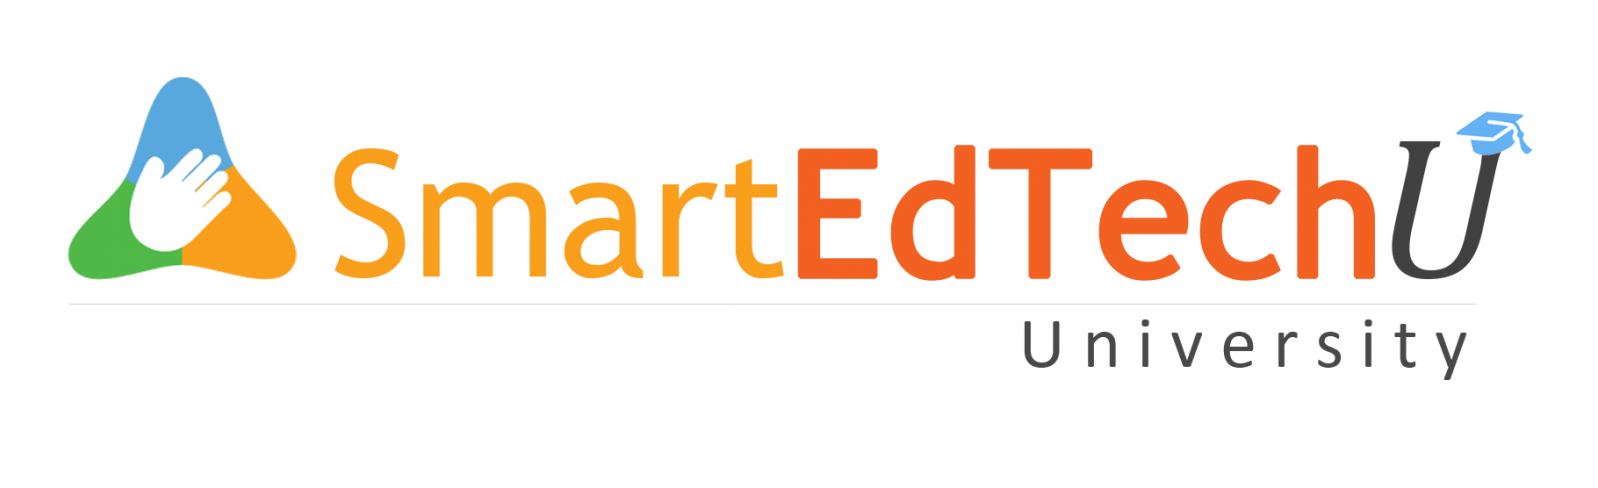 Smartedtech Logo